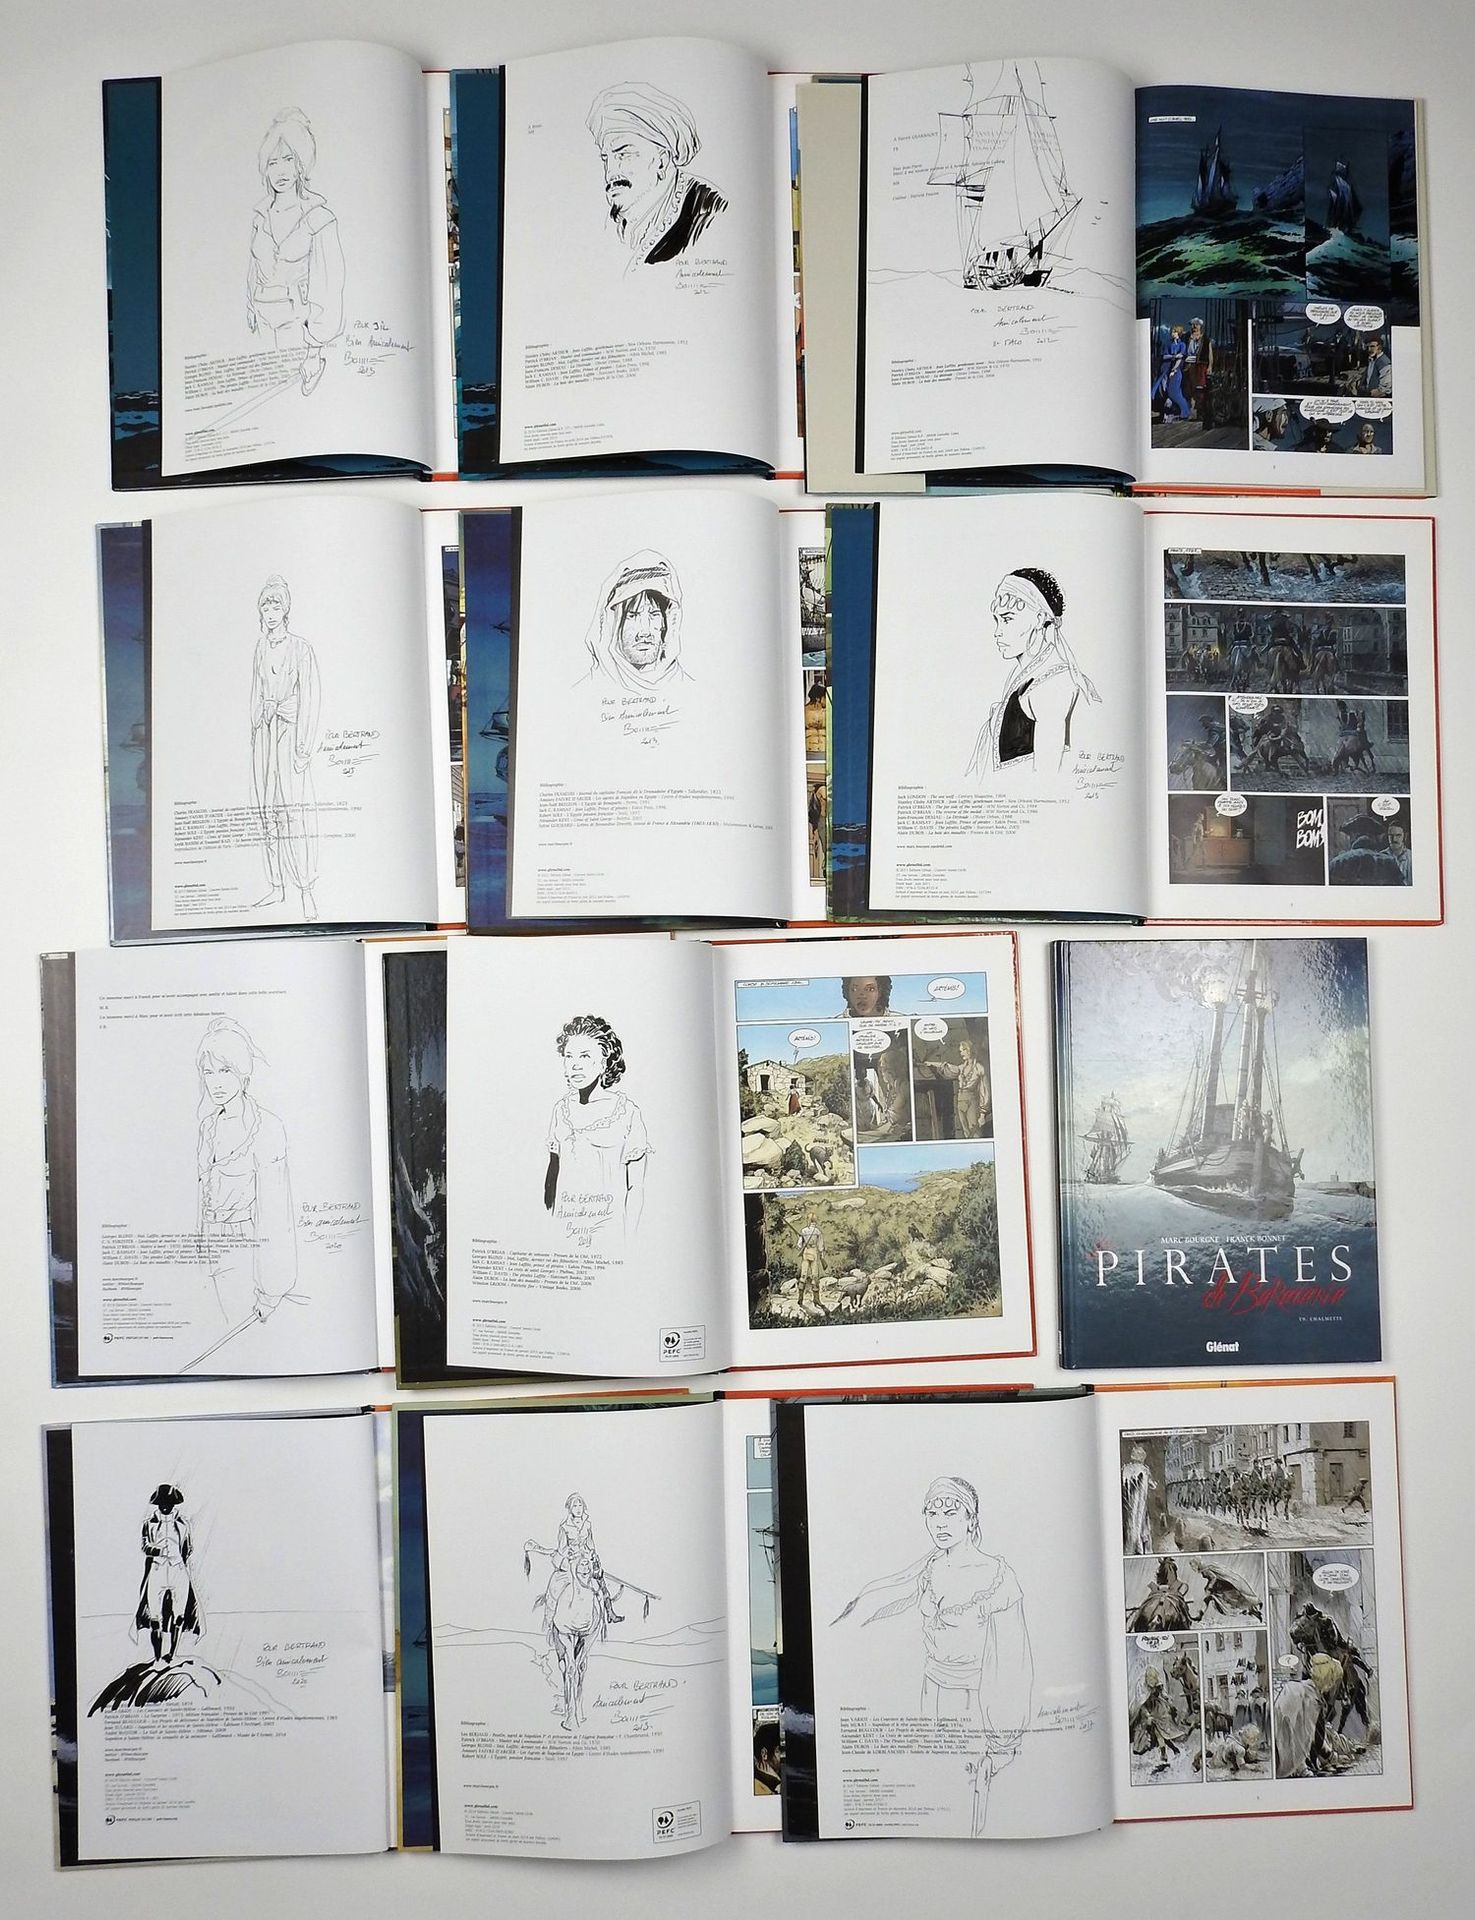 Null BONNET Franck

巴拉塔利亚的海盗

第1至12卷为原版，有图画（第9卷除外）

状况非常好，专辑末尾有收藏家的印章